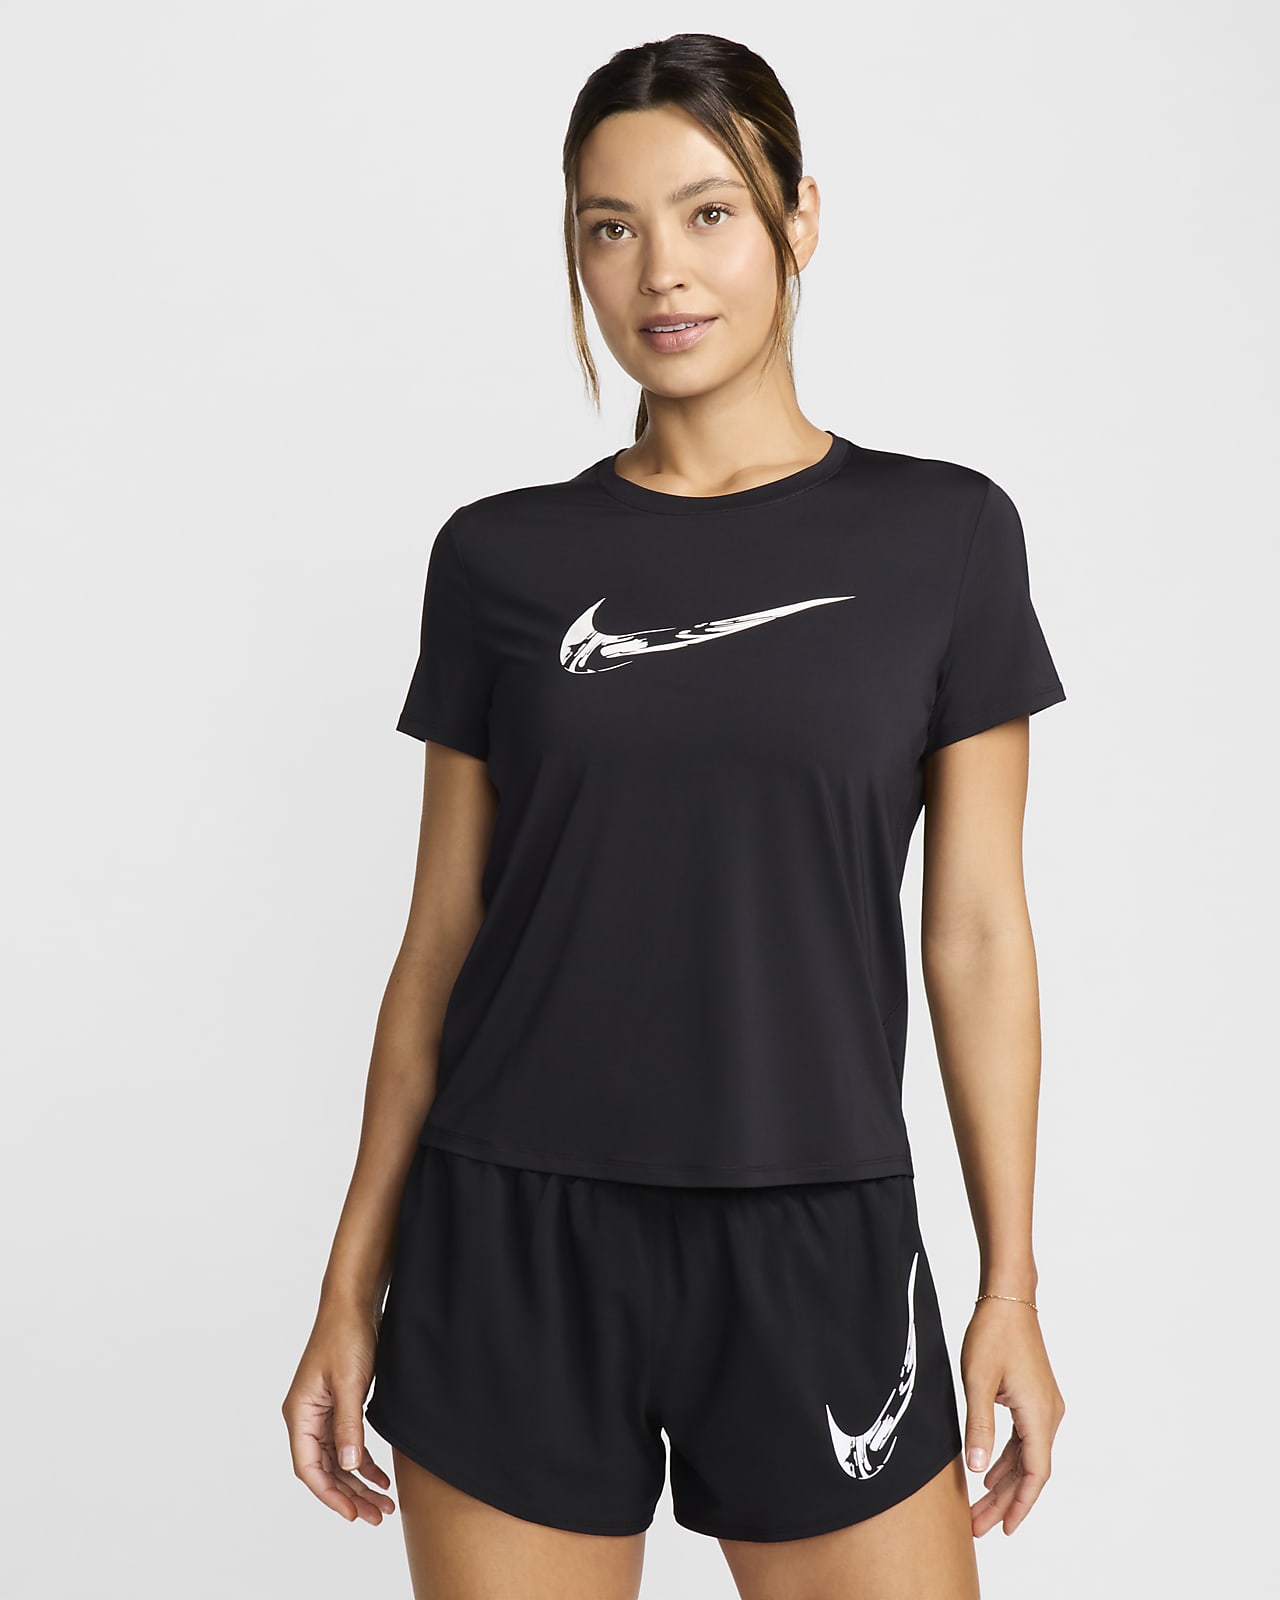 Dámské běžecké tričko Dri-FIT Nike One s potiskem a krátkým rukávem